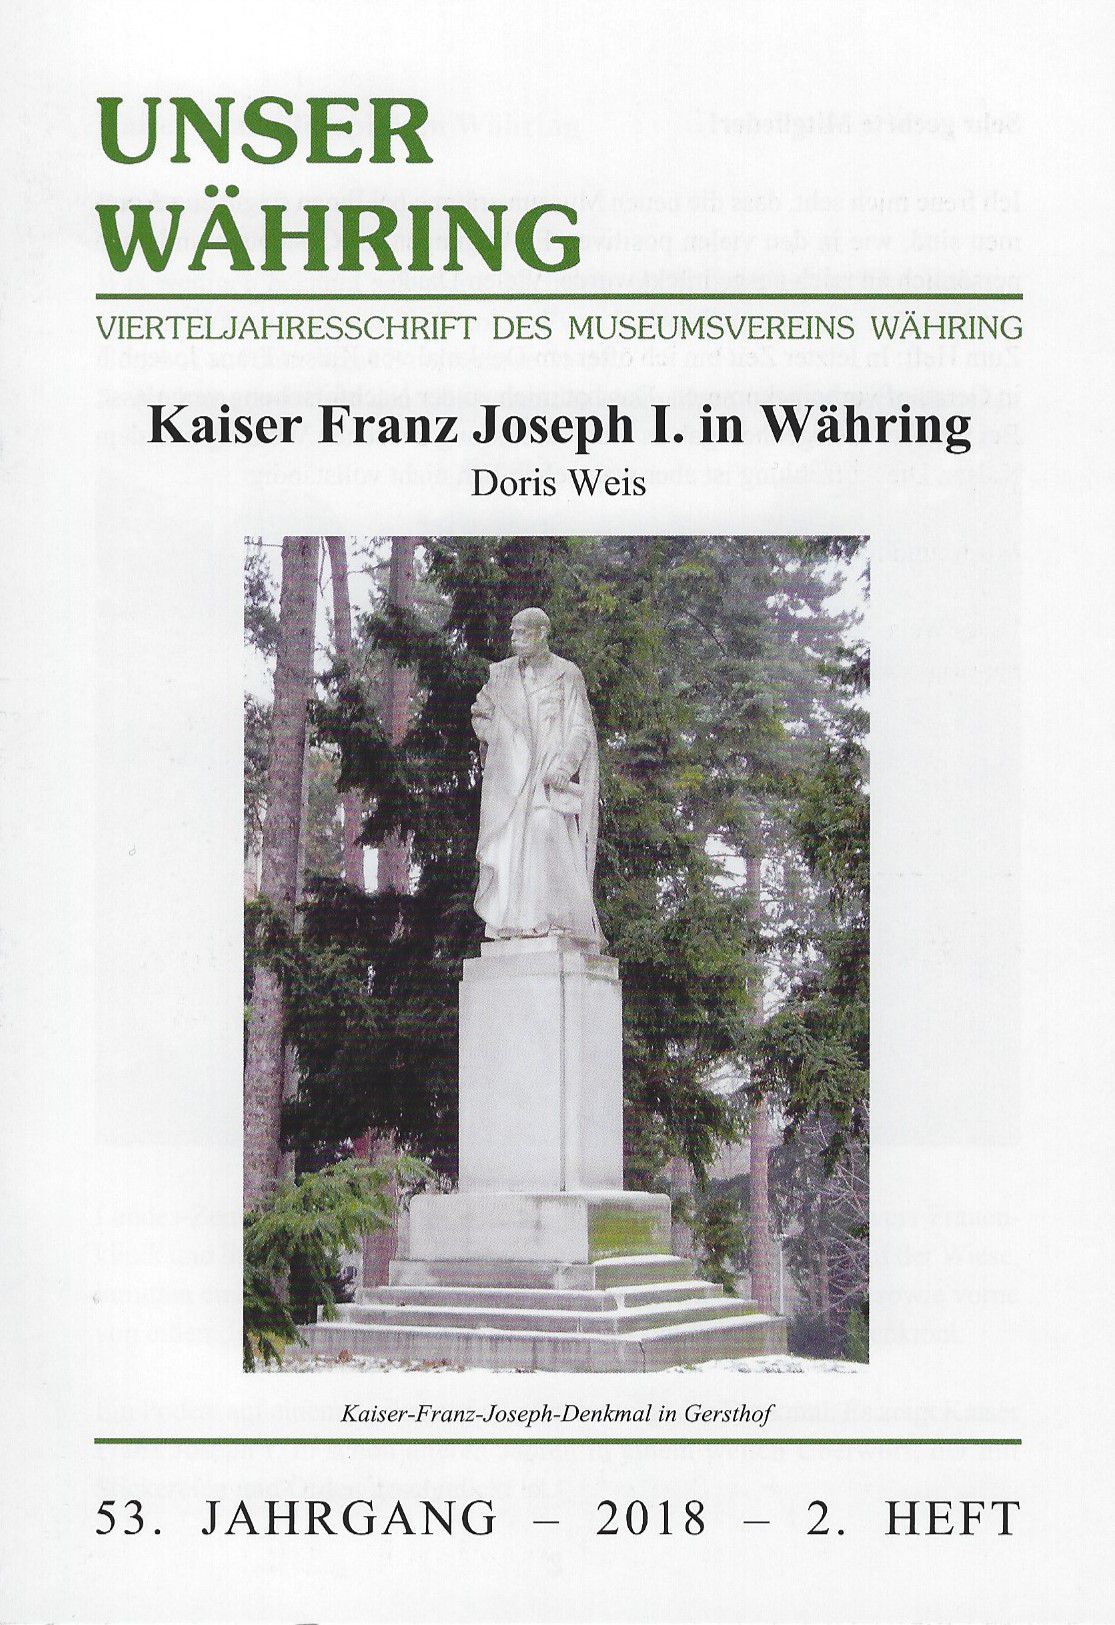 Publikation: Kaiser Franz Joseph I. in Währing. Bezirksmuseum Währing